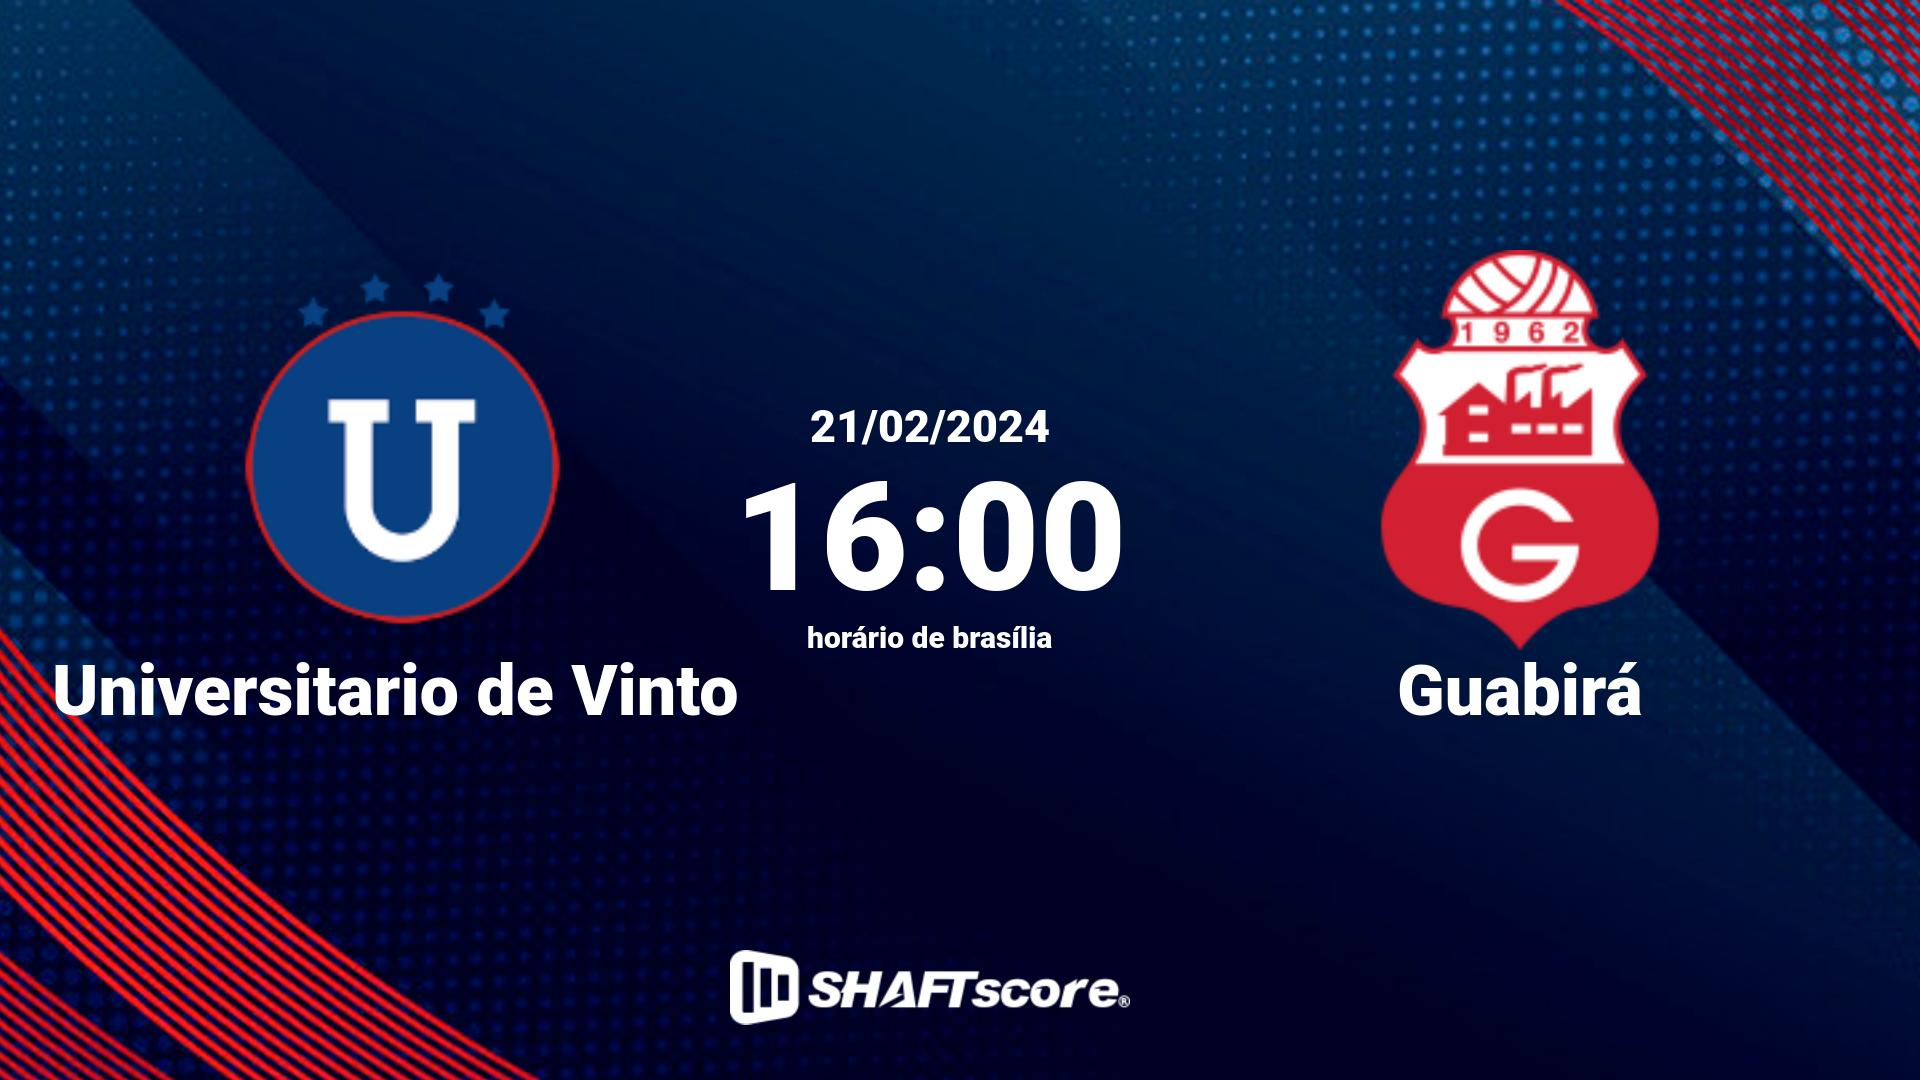 Estatísticas do jogo Universitario de Vinto vs Guabirá 21.02 16:00